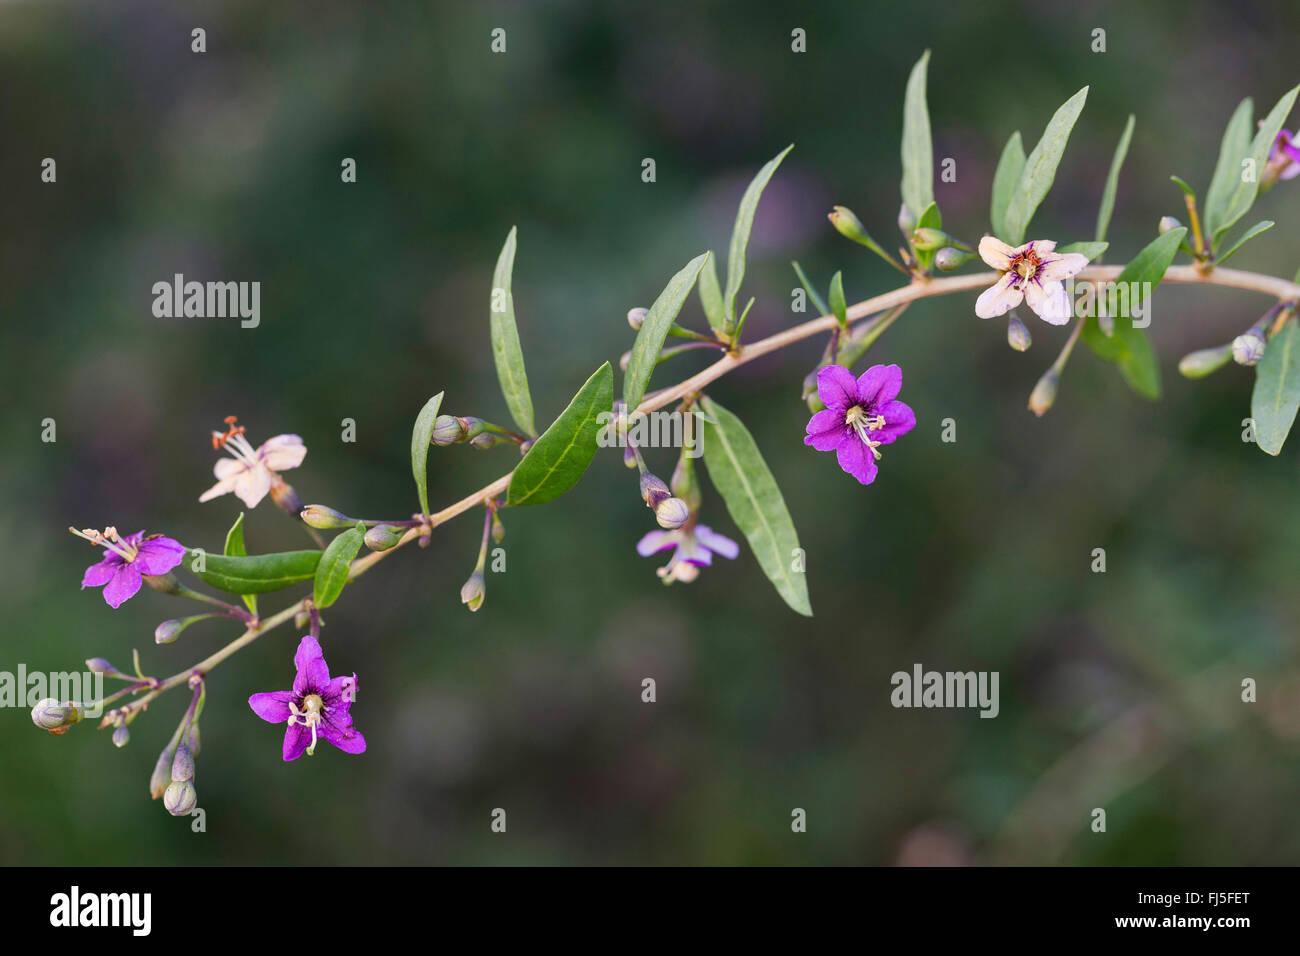 Chinese wolfberry, common matrimony vine (Lycium barbarum, Lycium halimifolium), blooming branch, Germany Stock Photo